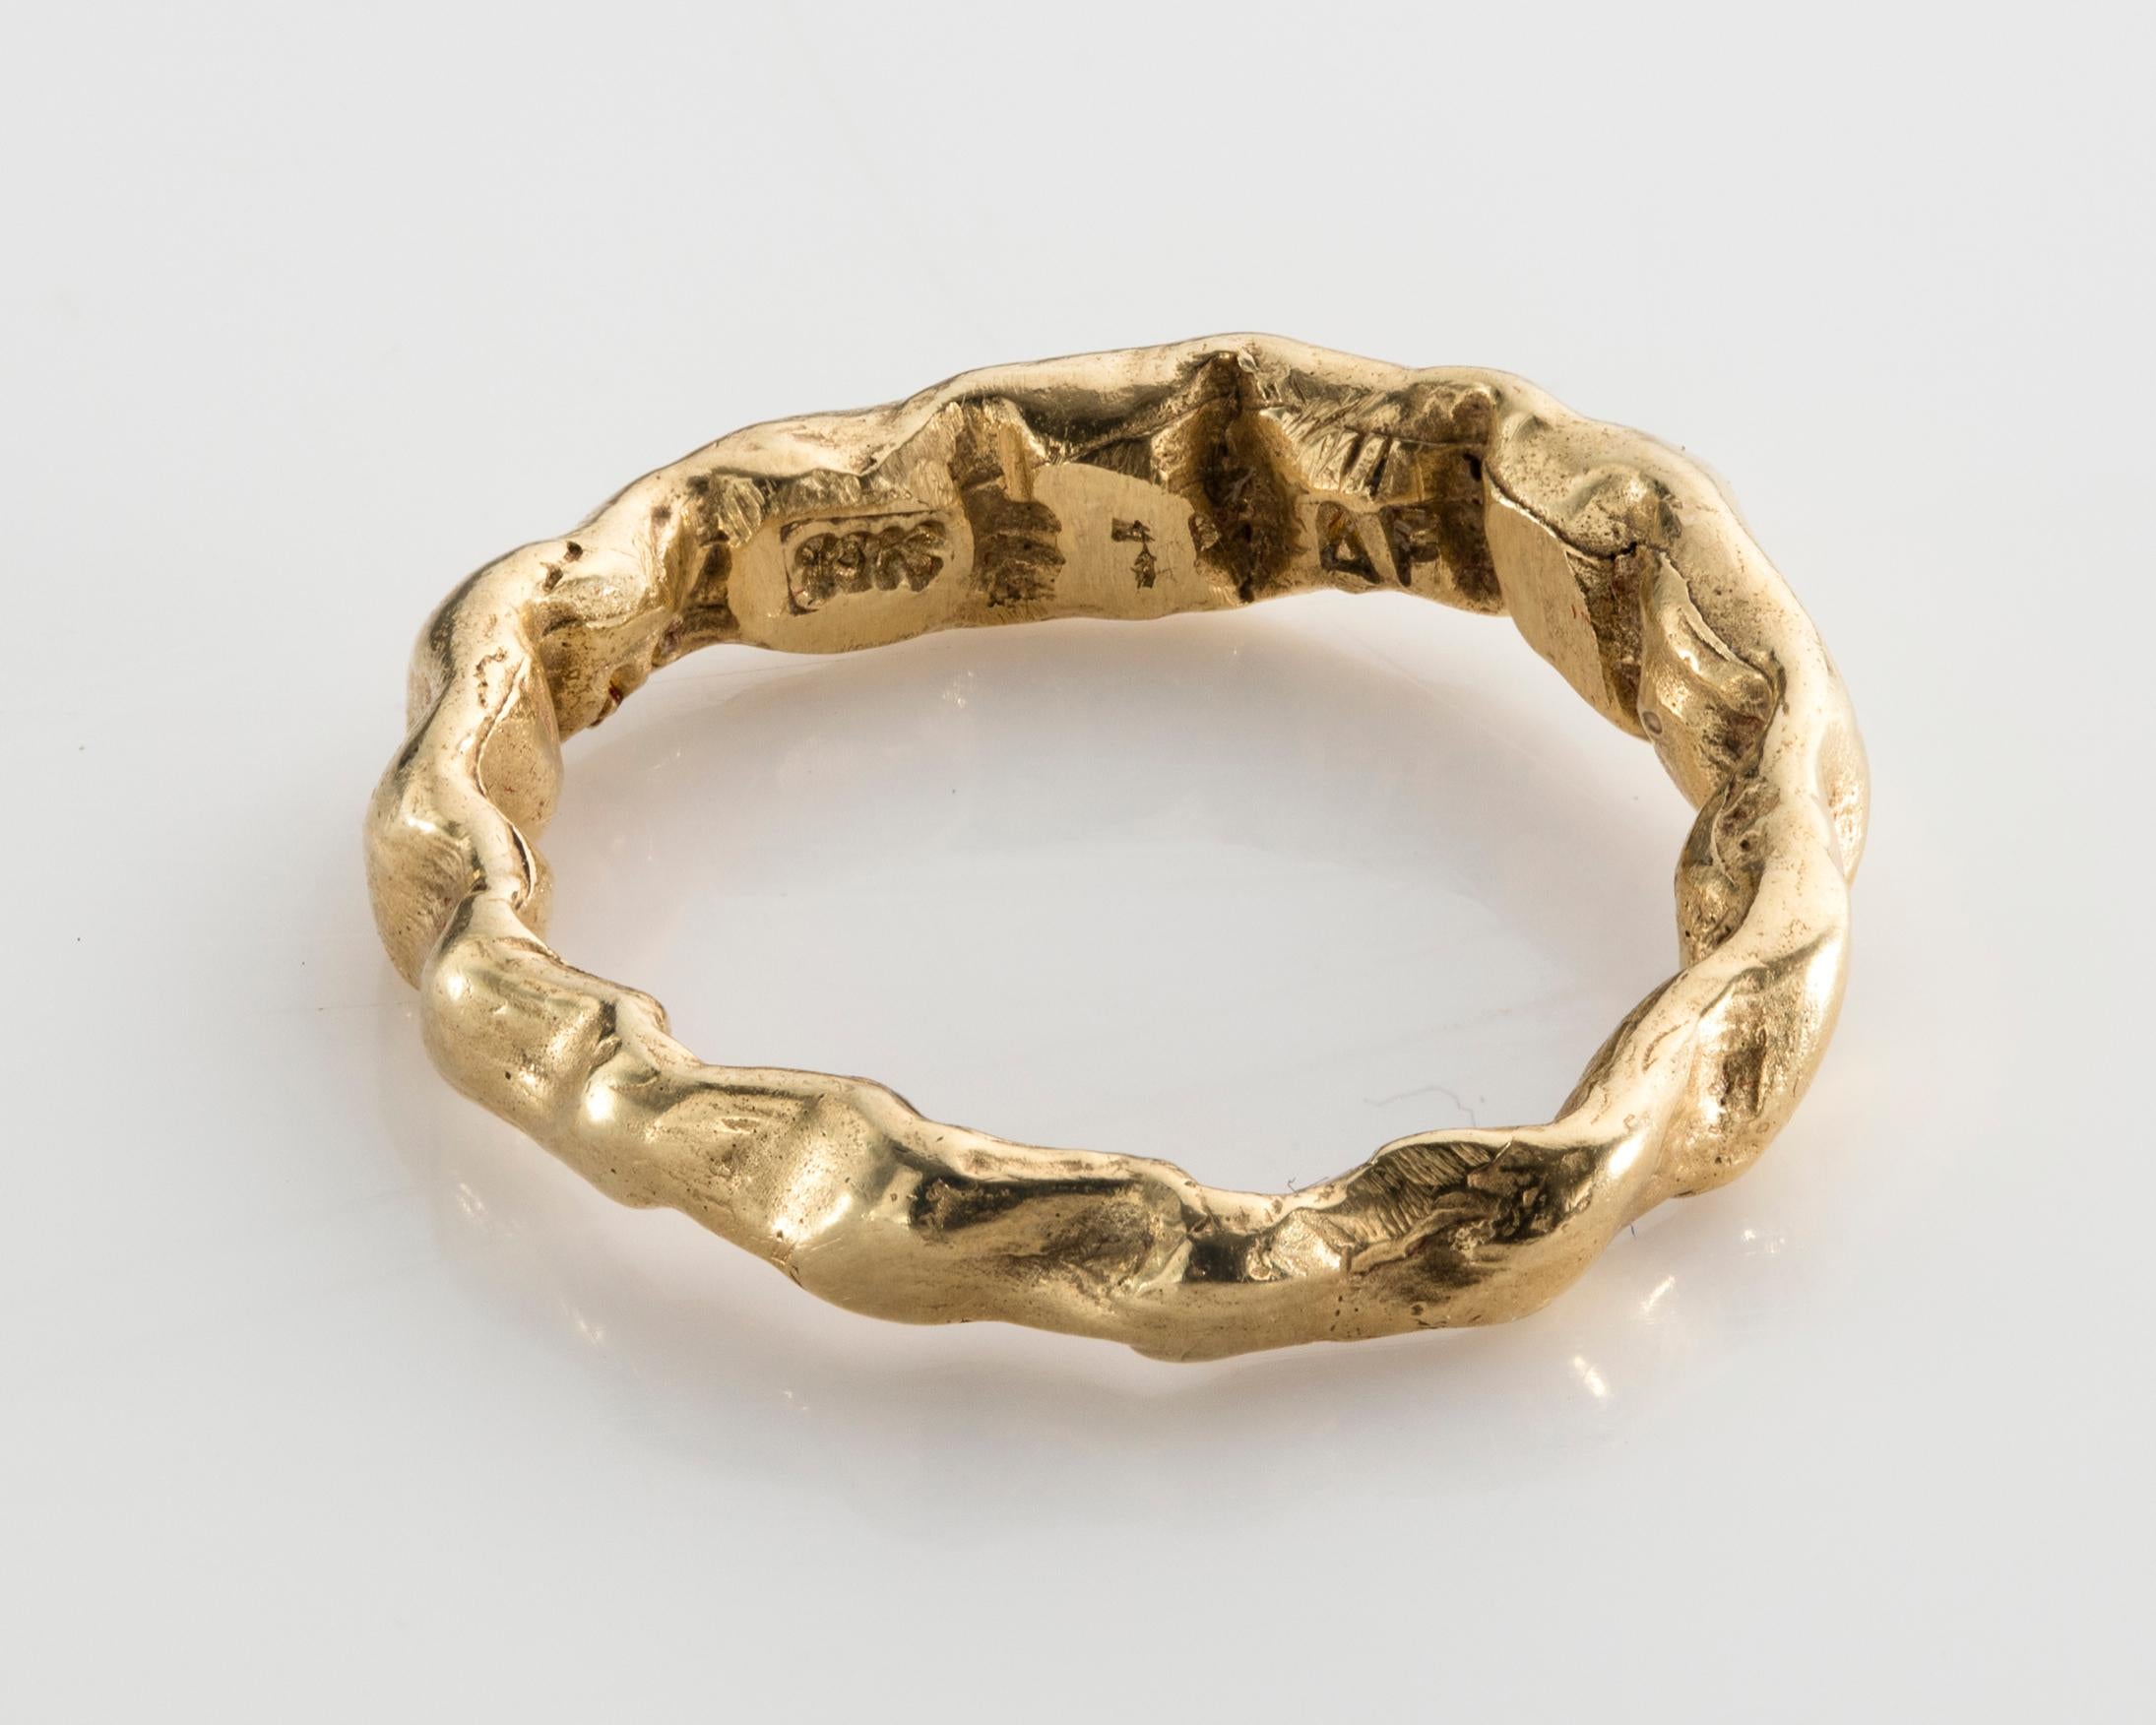 Barock 7 Ring aus 18-karätigem Gold in Größe 4-1/2. Entworfen und hergestellt von Anne Fischer, 2013.
 